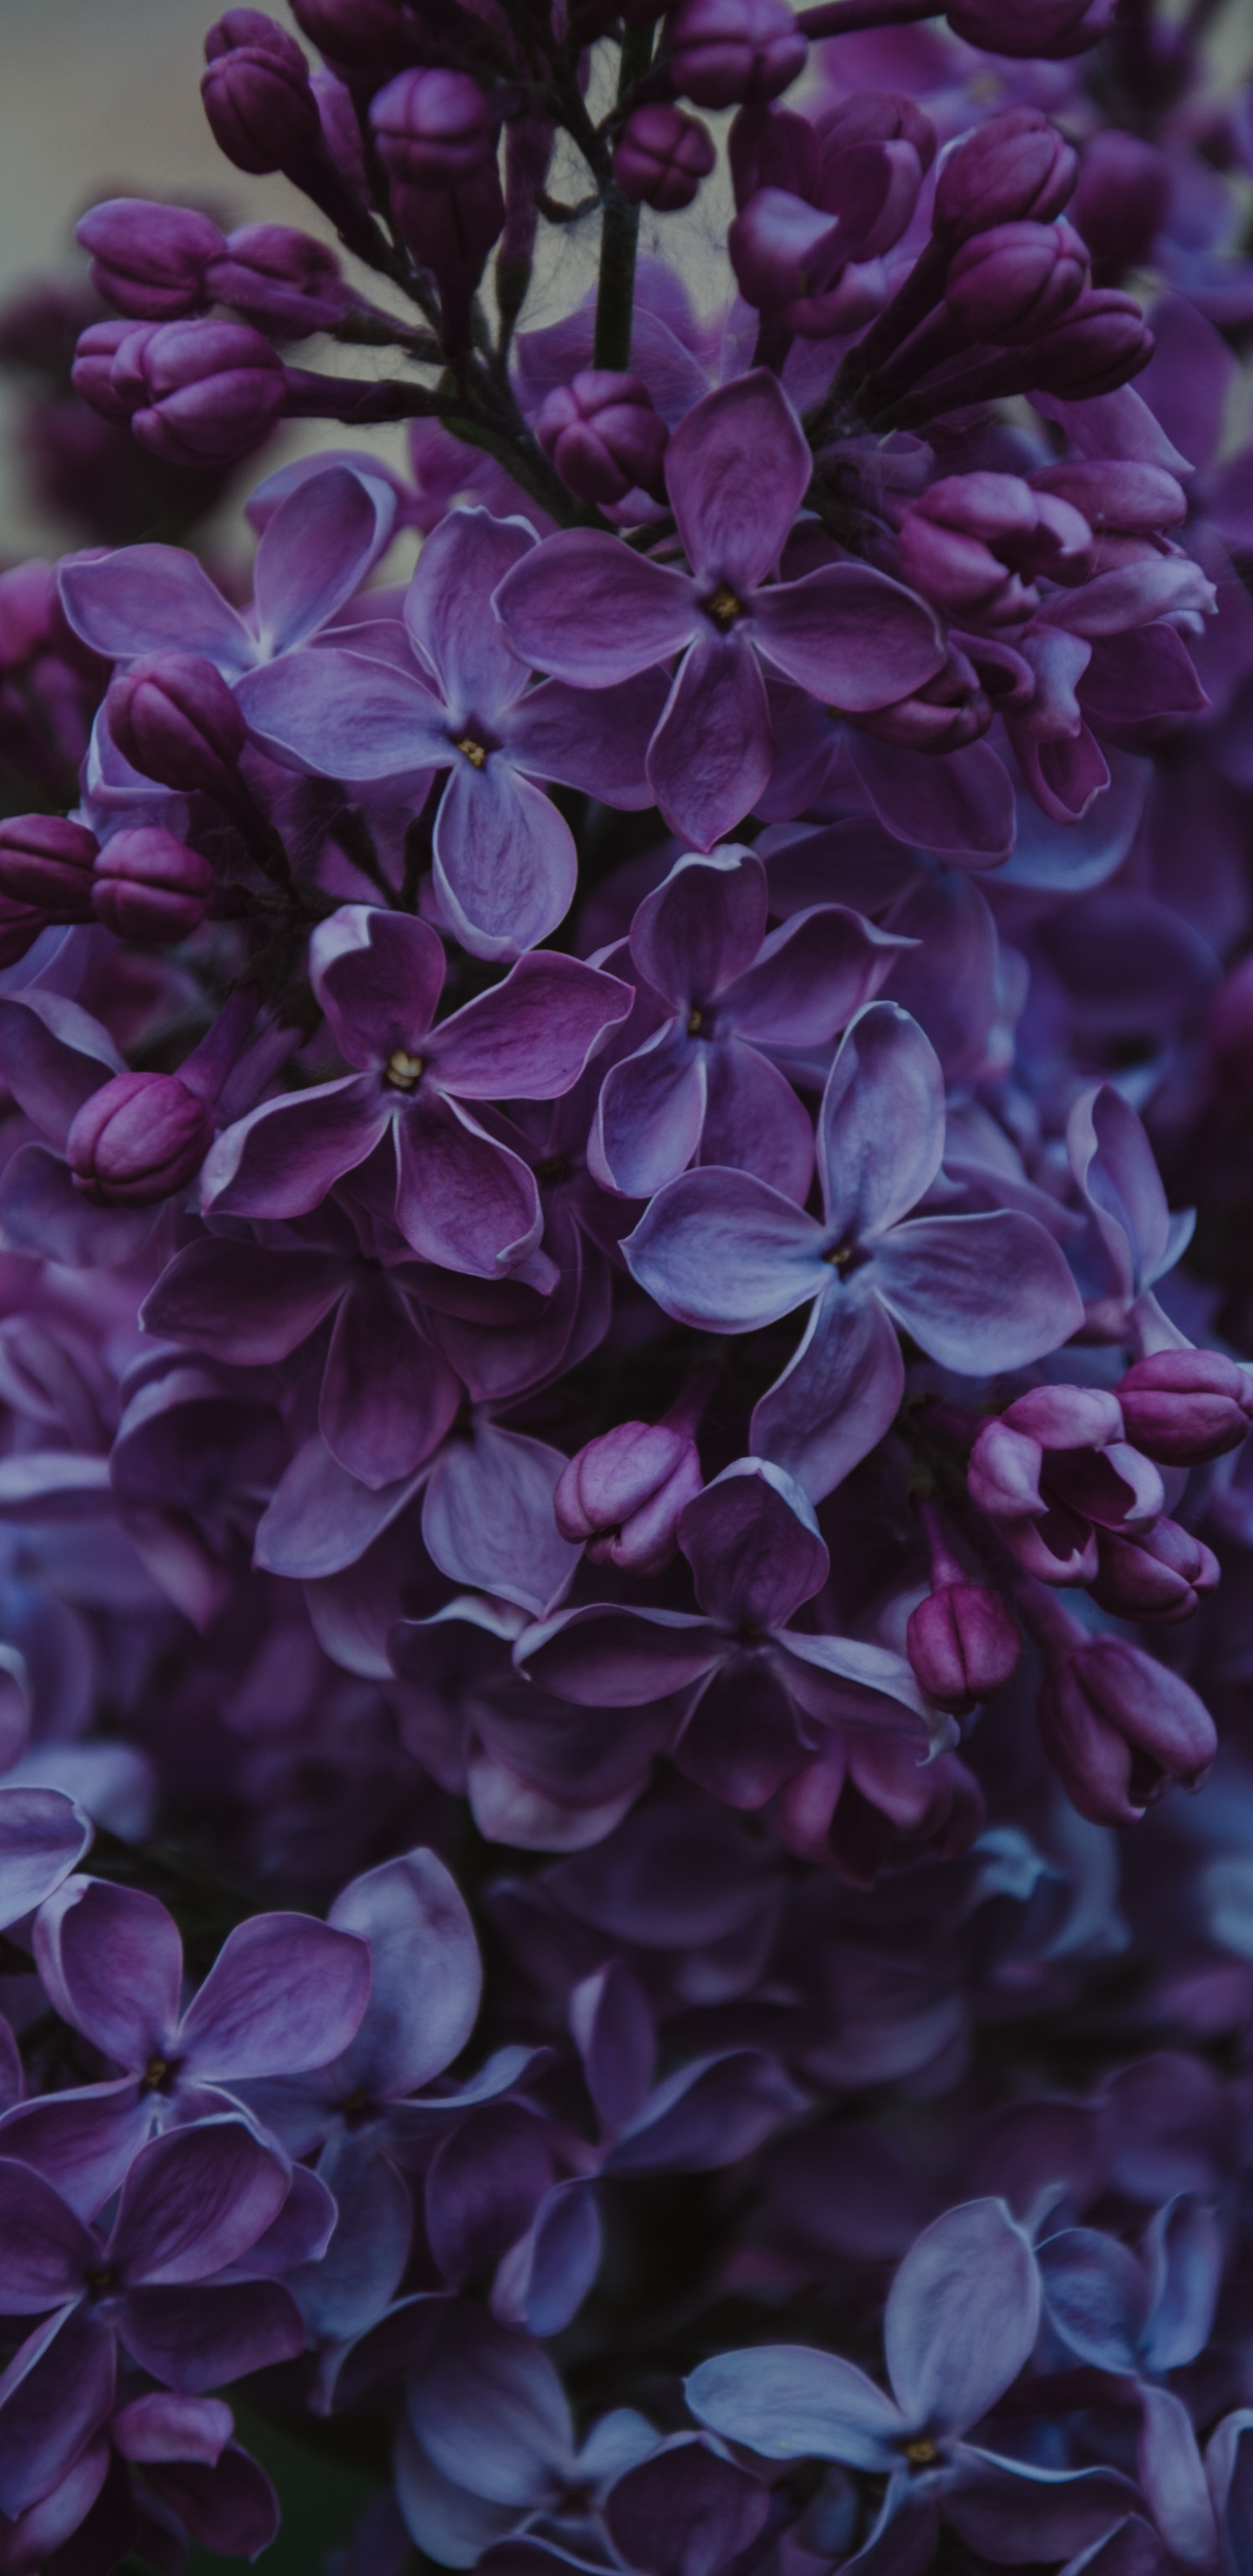 Fleurs Violettes Dans L'objectif à Basculement. Wallpaper in 1440x2960 Resolution